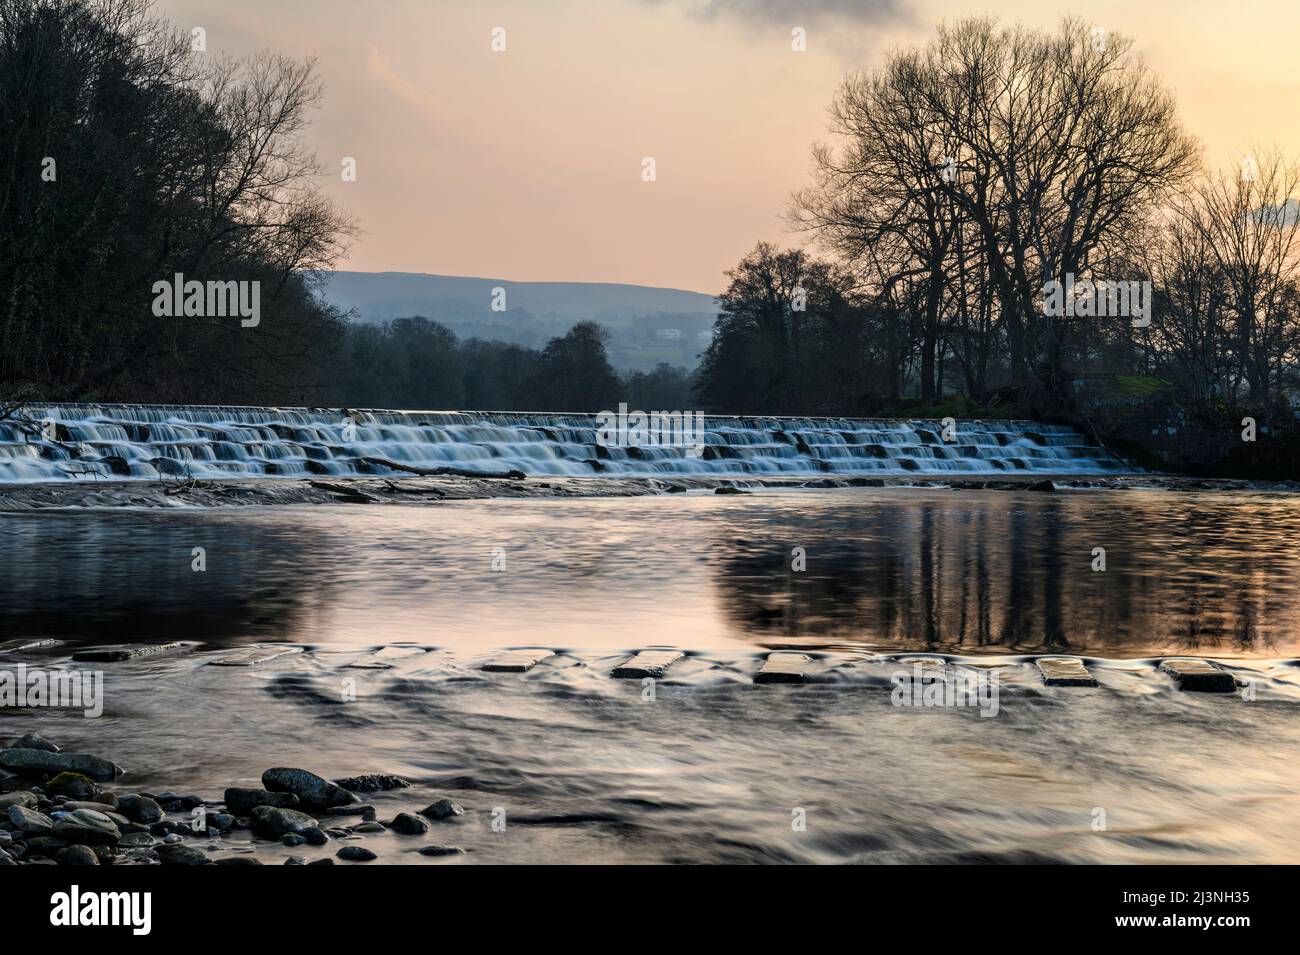 Paisaje rural escénico (agua que fluye sobre escalones de paso, paso de piedras cruzando el lugar) - Río Wharfe, Burley en Wharfedale, Yorkshire, Inglaterra, Reino Unido. Foto de stock